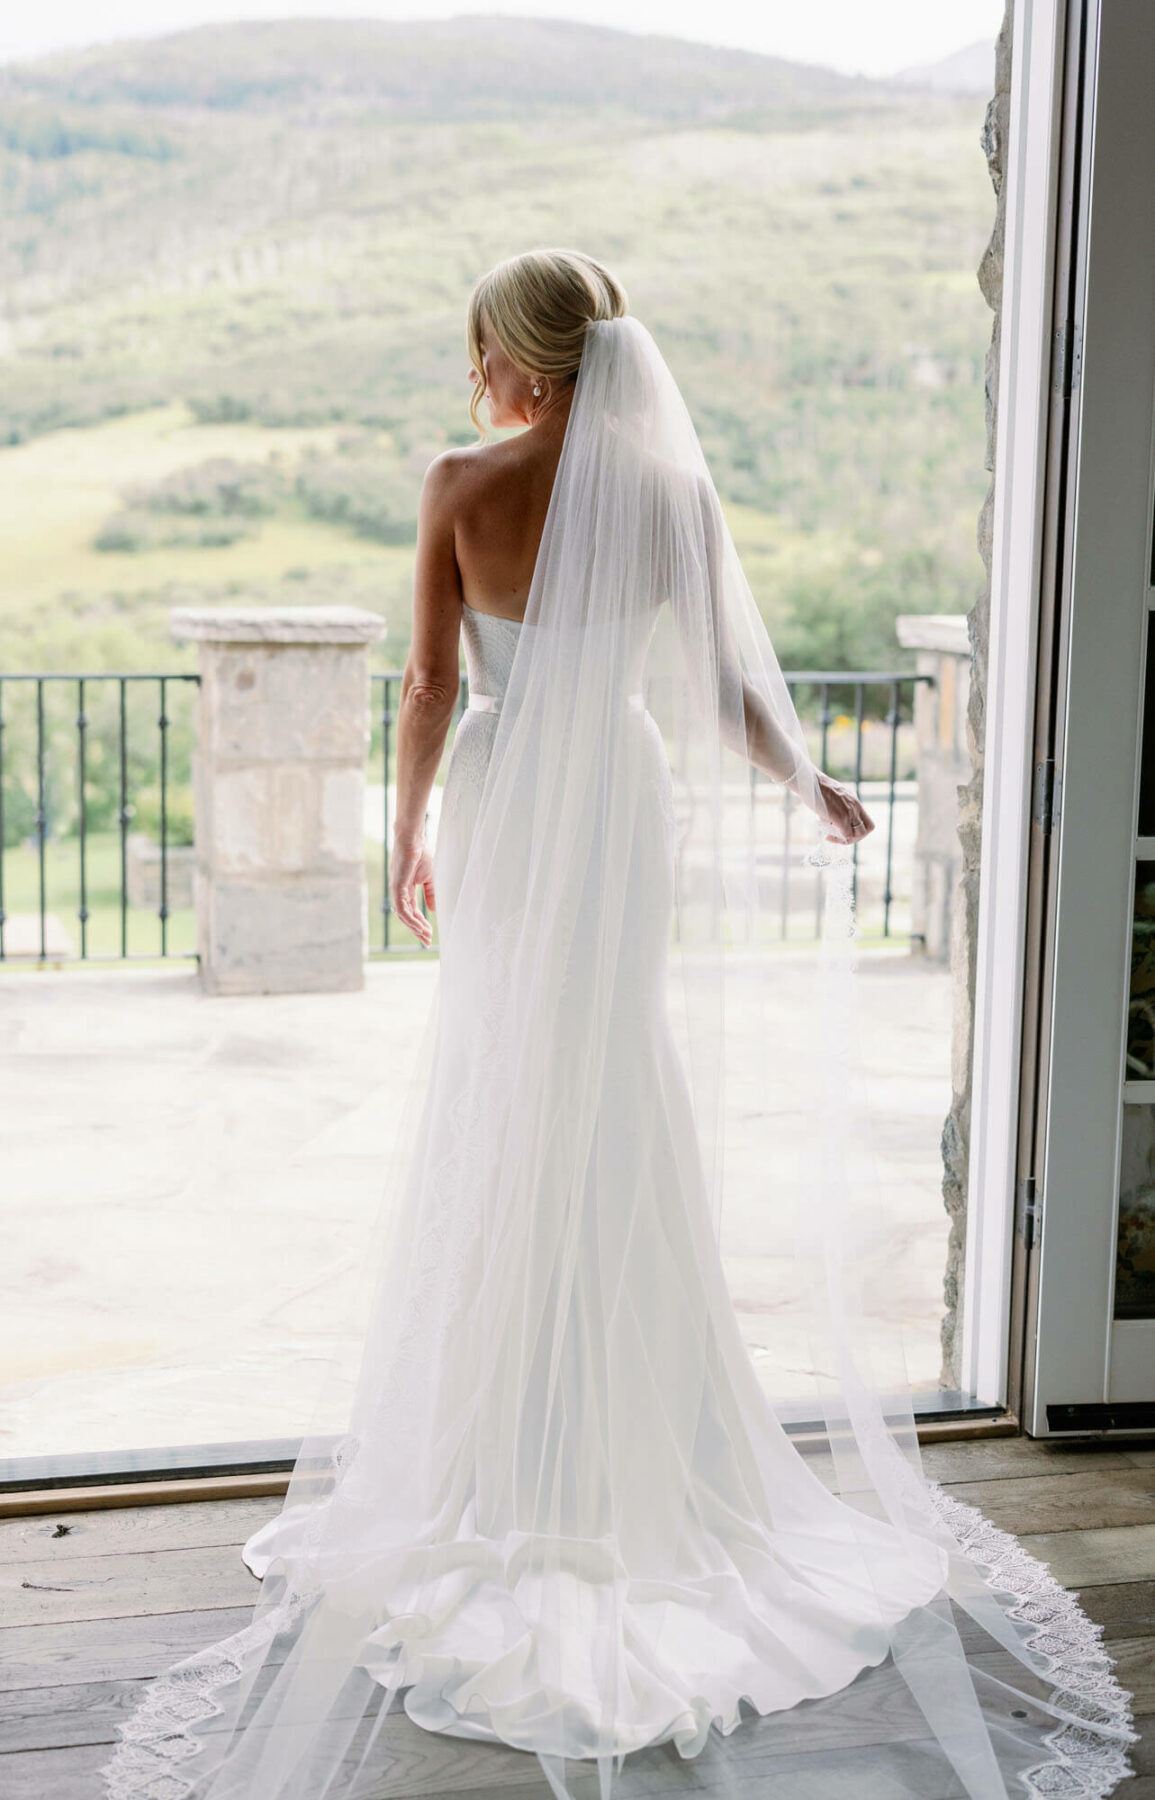 Aspen Wedding Photographer - Tara Marolda